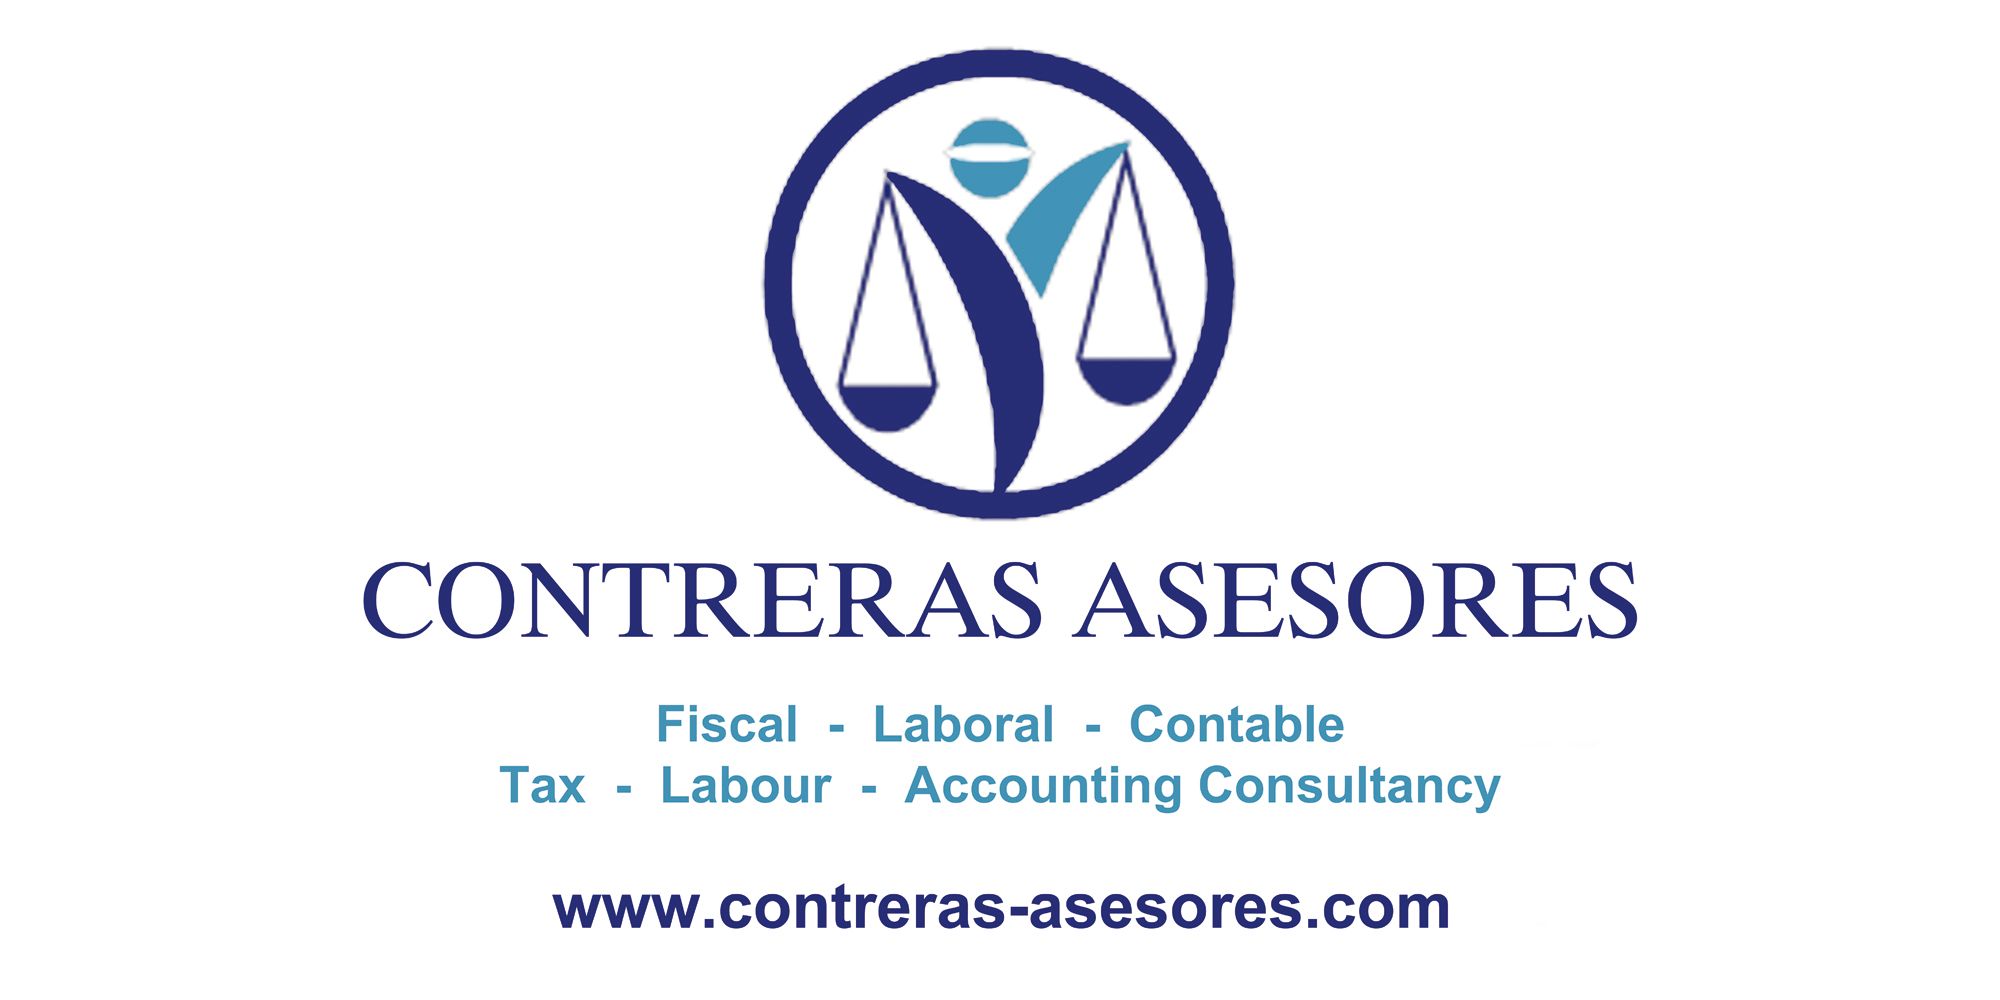 Contreras Asesores